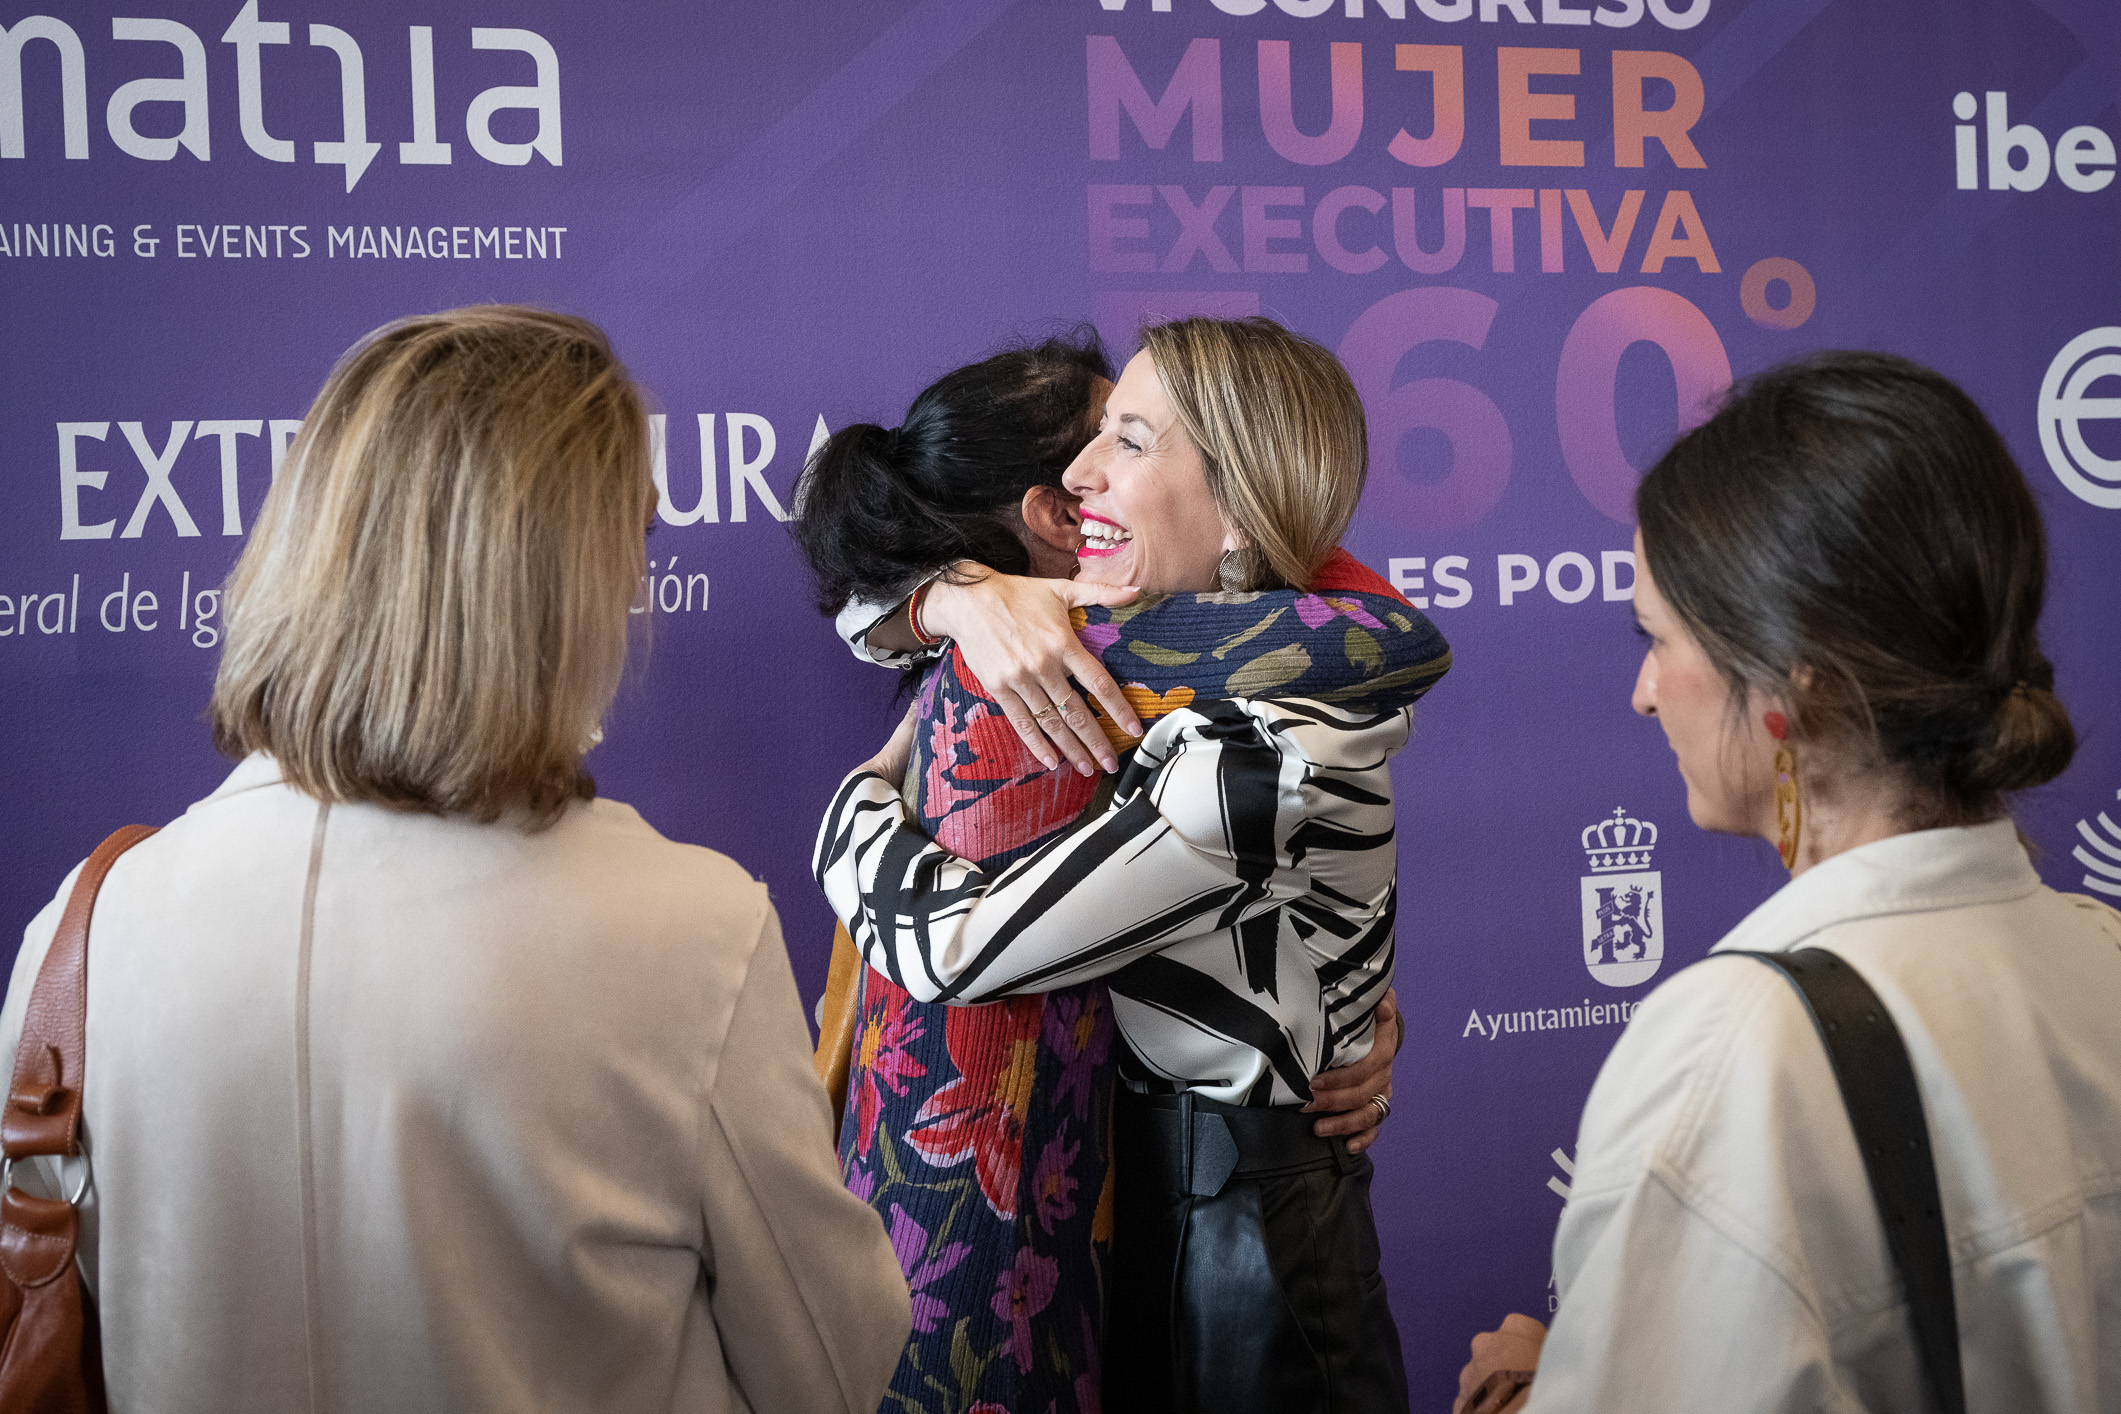 La presidenta de la Junta de Extremadura saluda a las personas que asisten al congreso